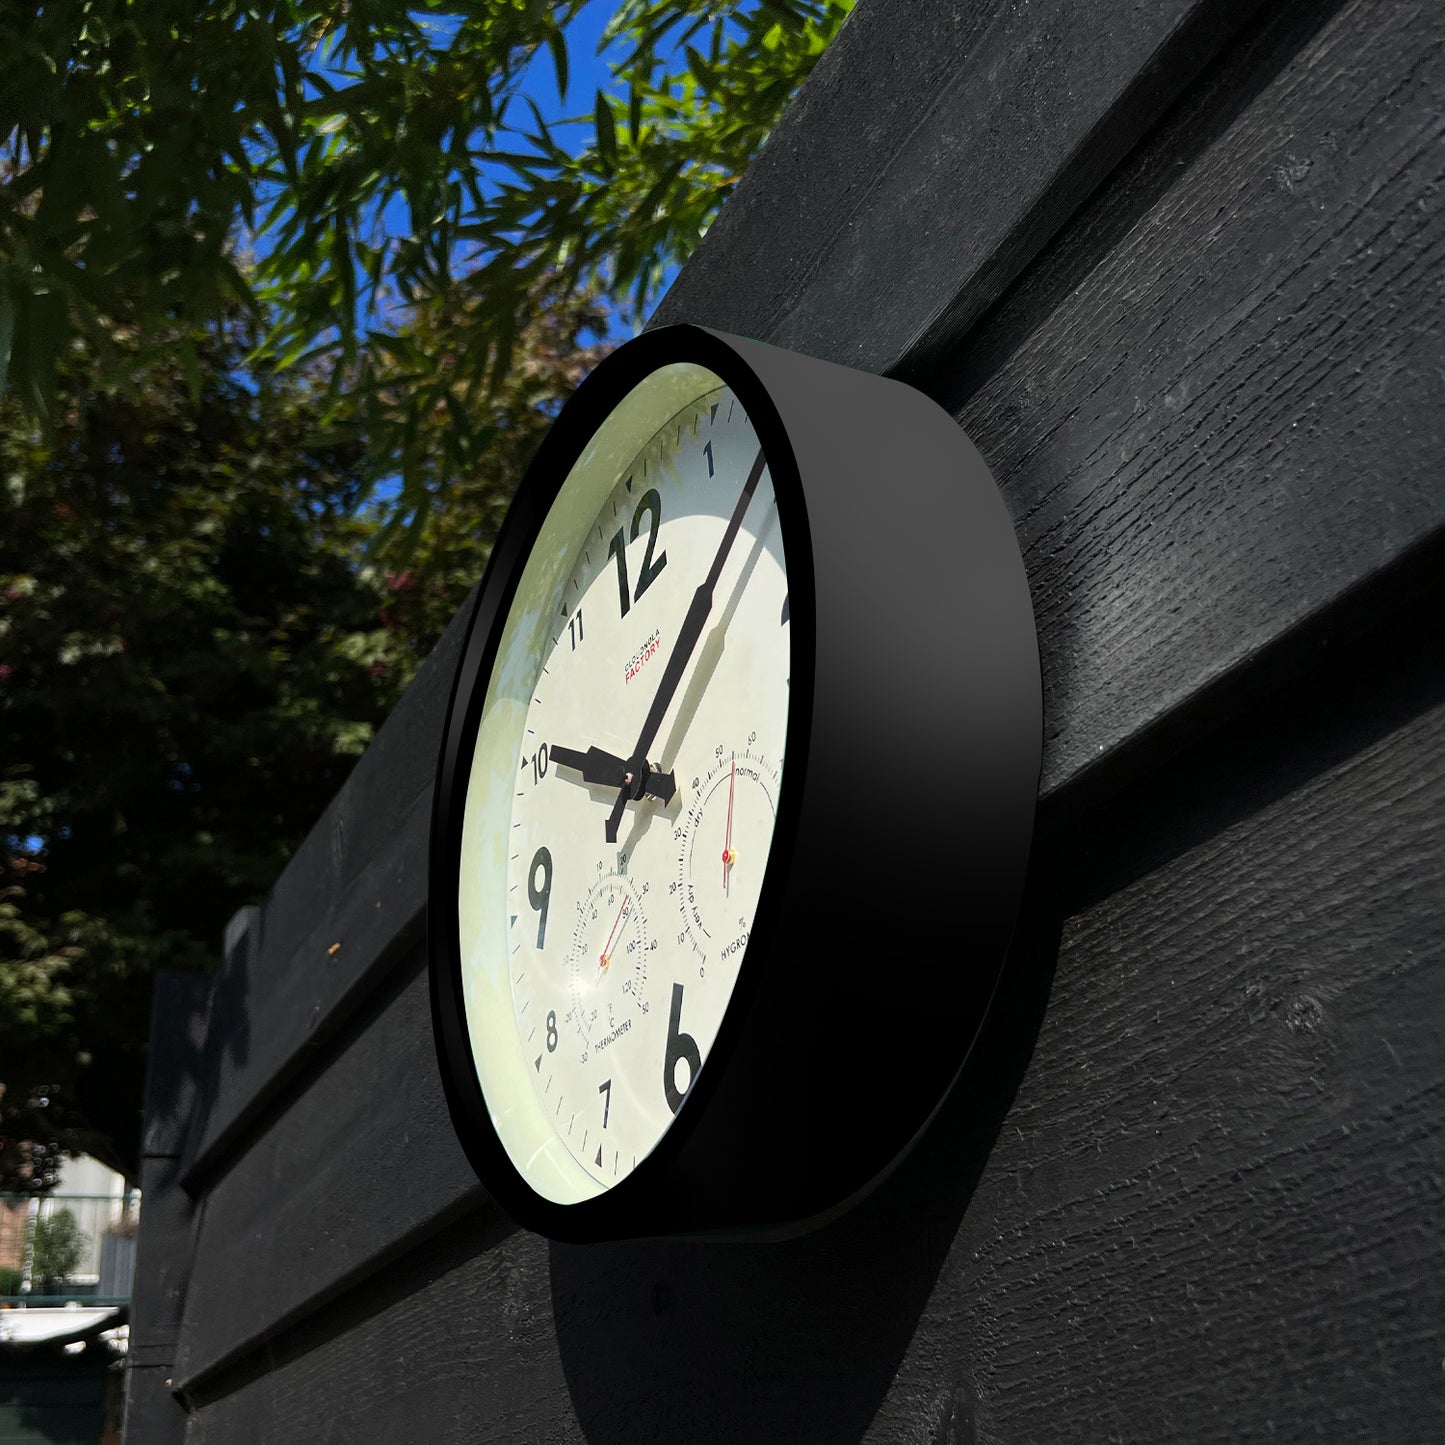 Horloge murale extérieure noire d'usine - Station tous temps avec baromètre et jauge de température